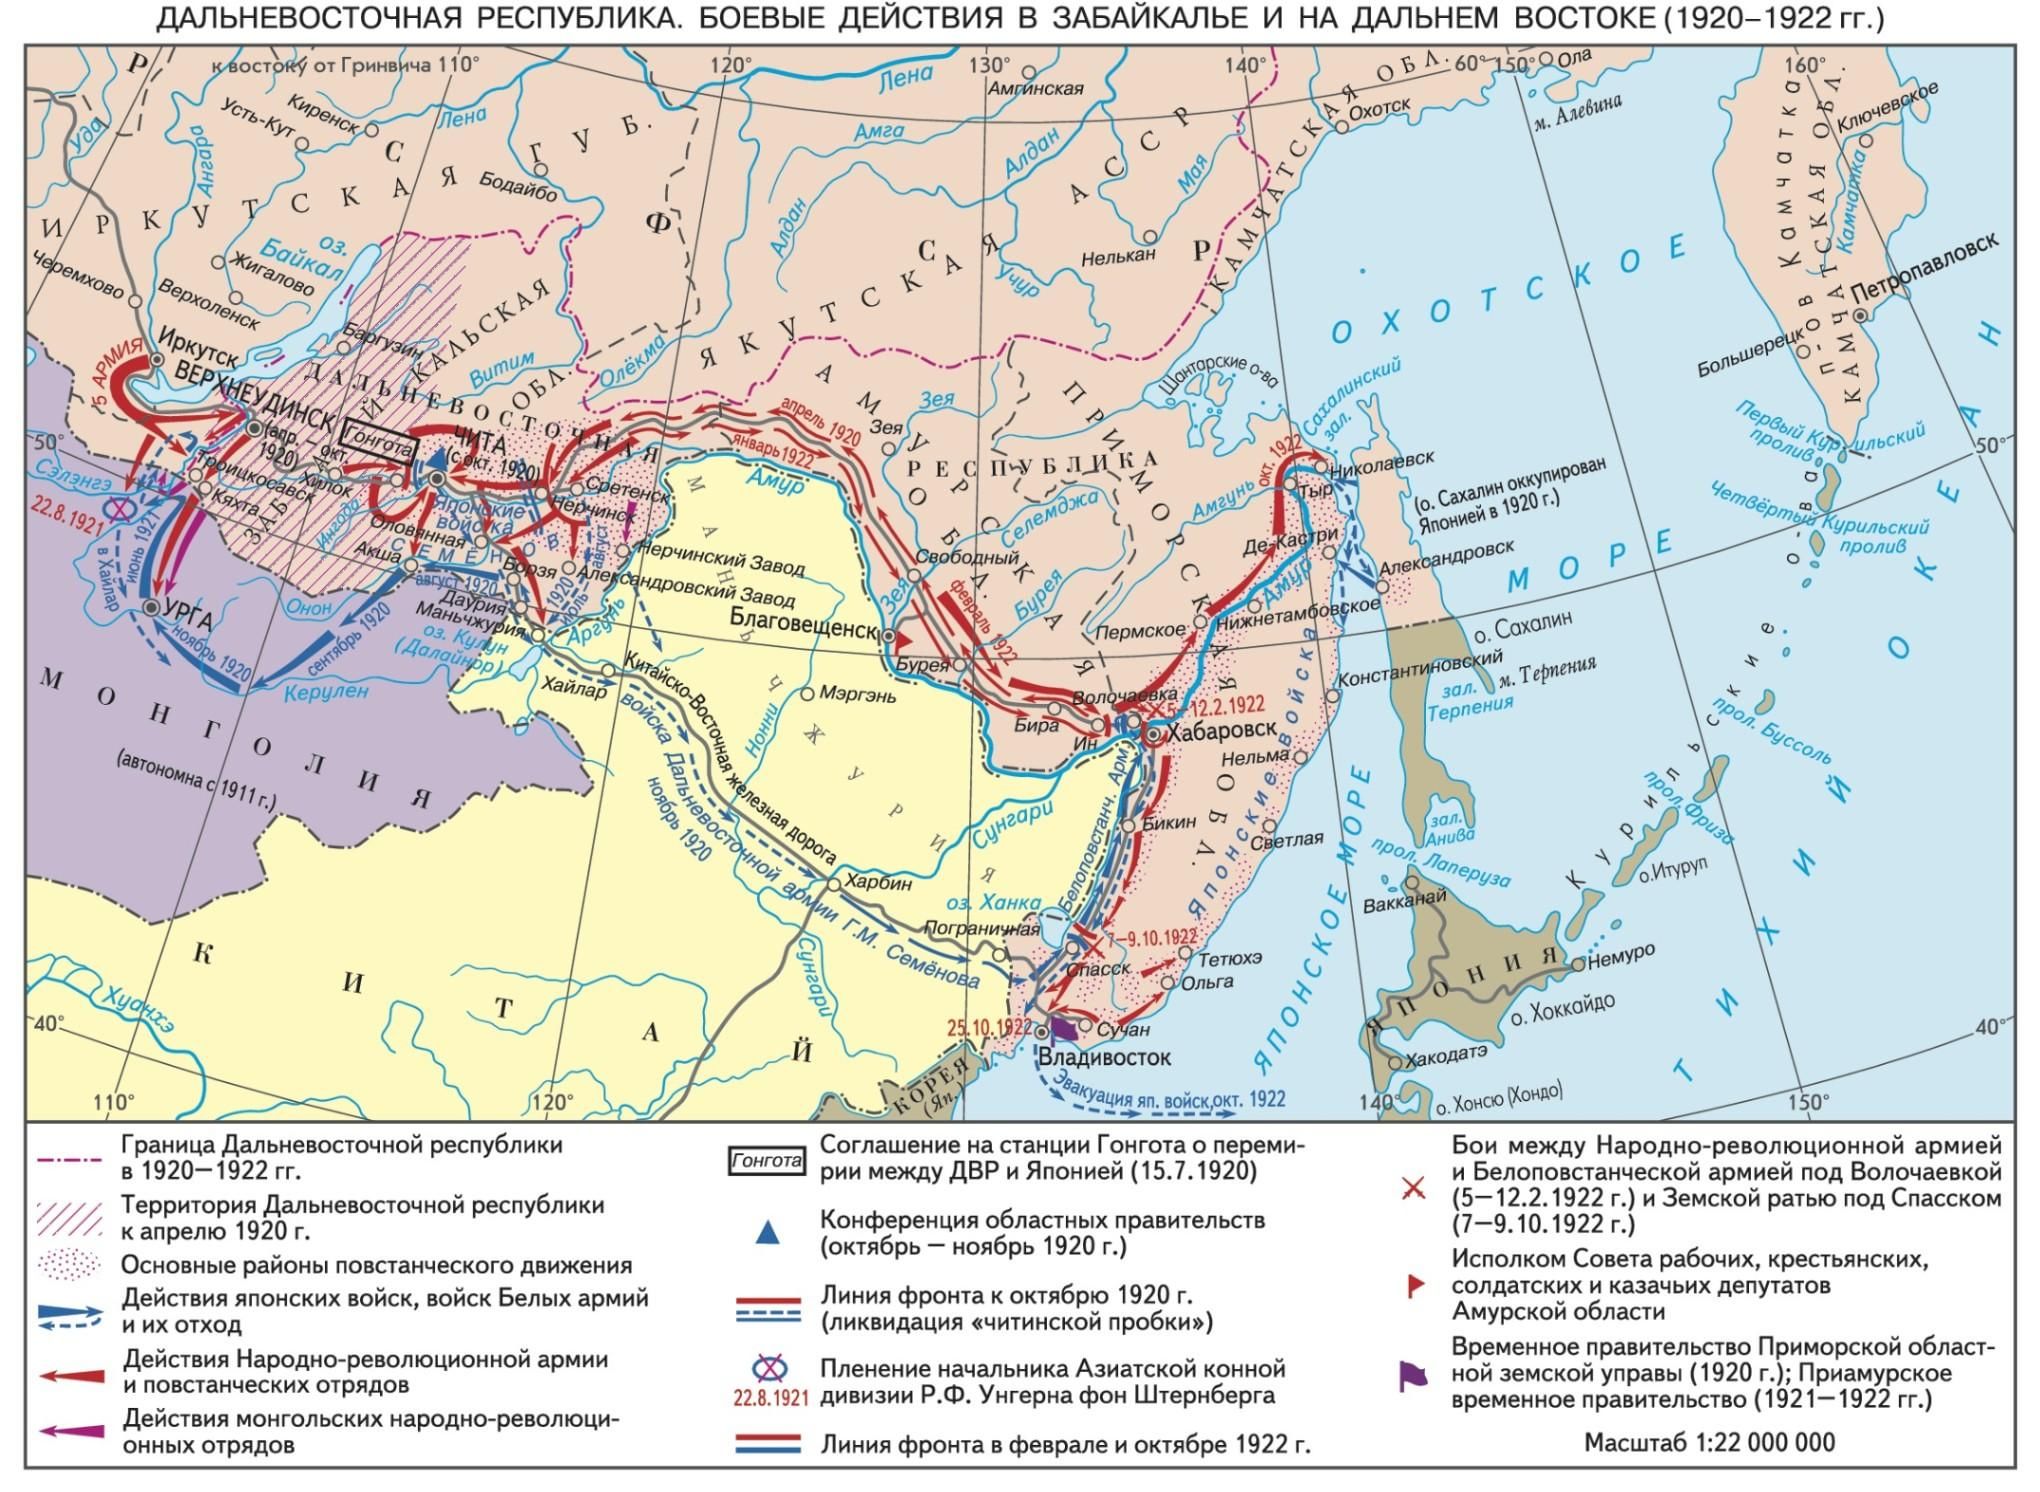 Боевые действия на Дальнем Востоке, 1920-1922 гг.